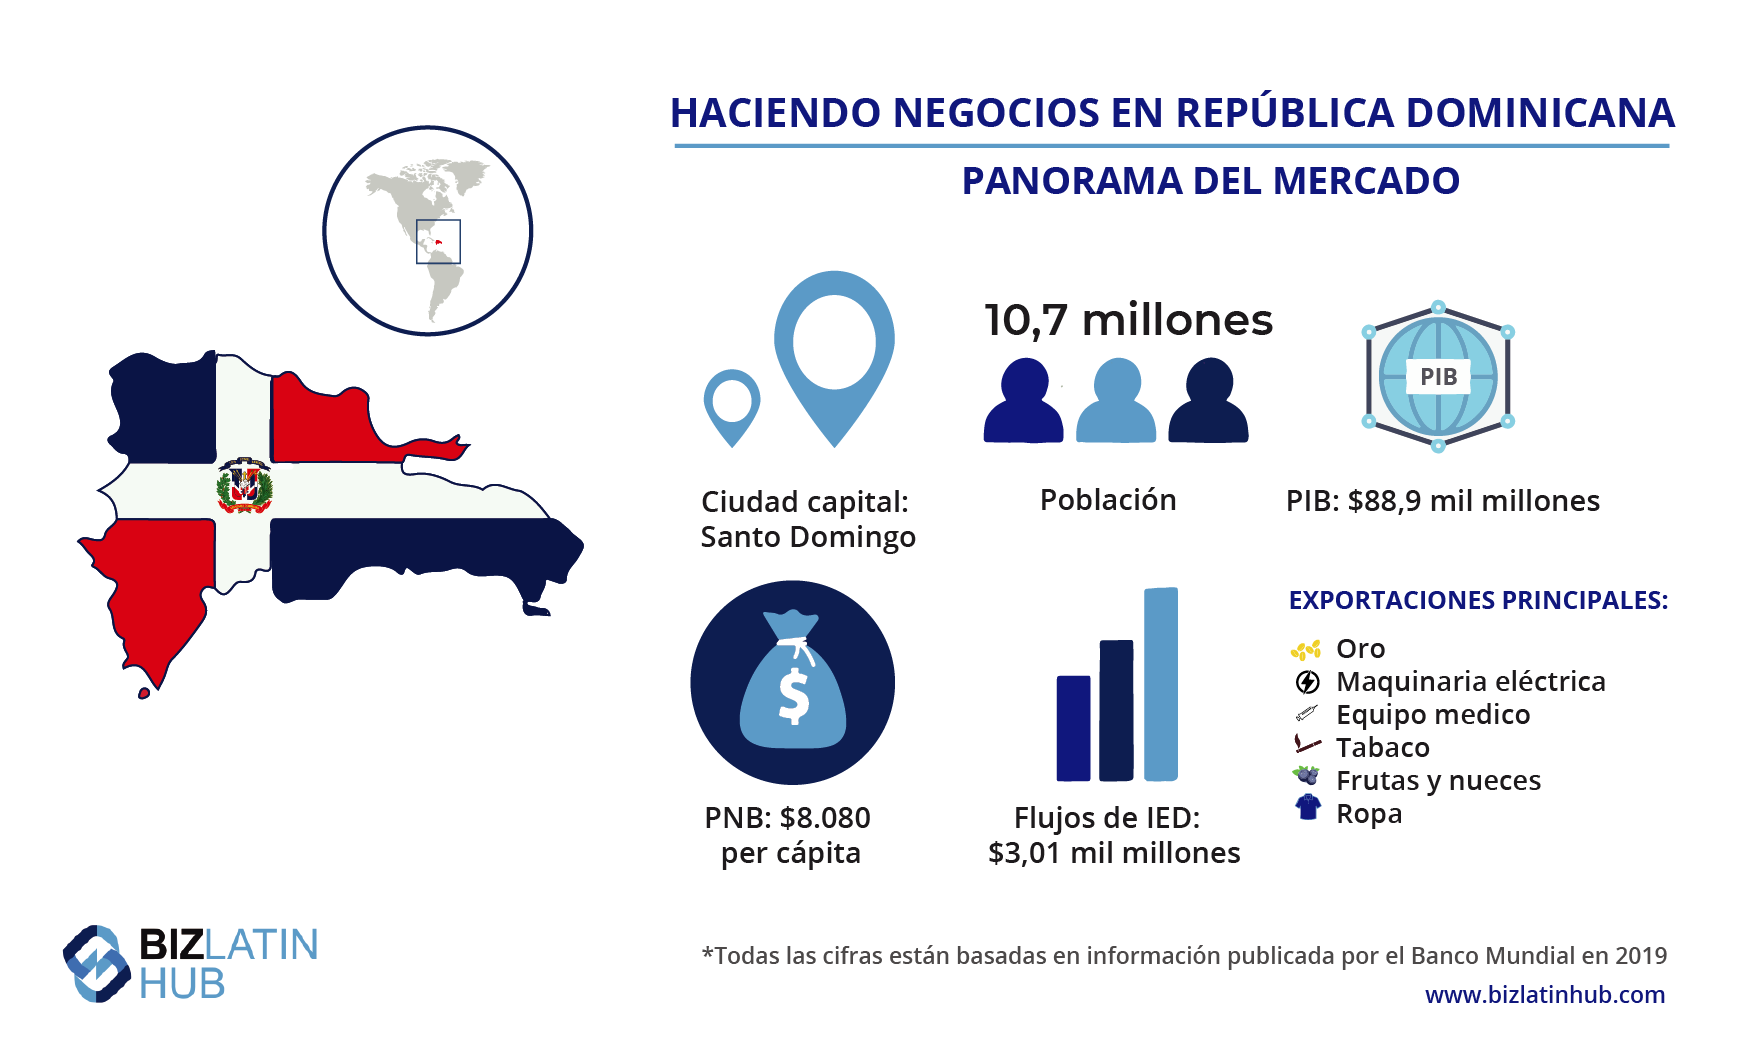 Panorama del mercado de República Dominicana, donde el turismo ofrece lucrativas oportunidades de inversión